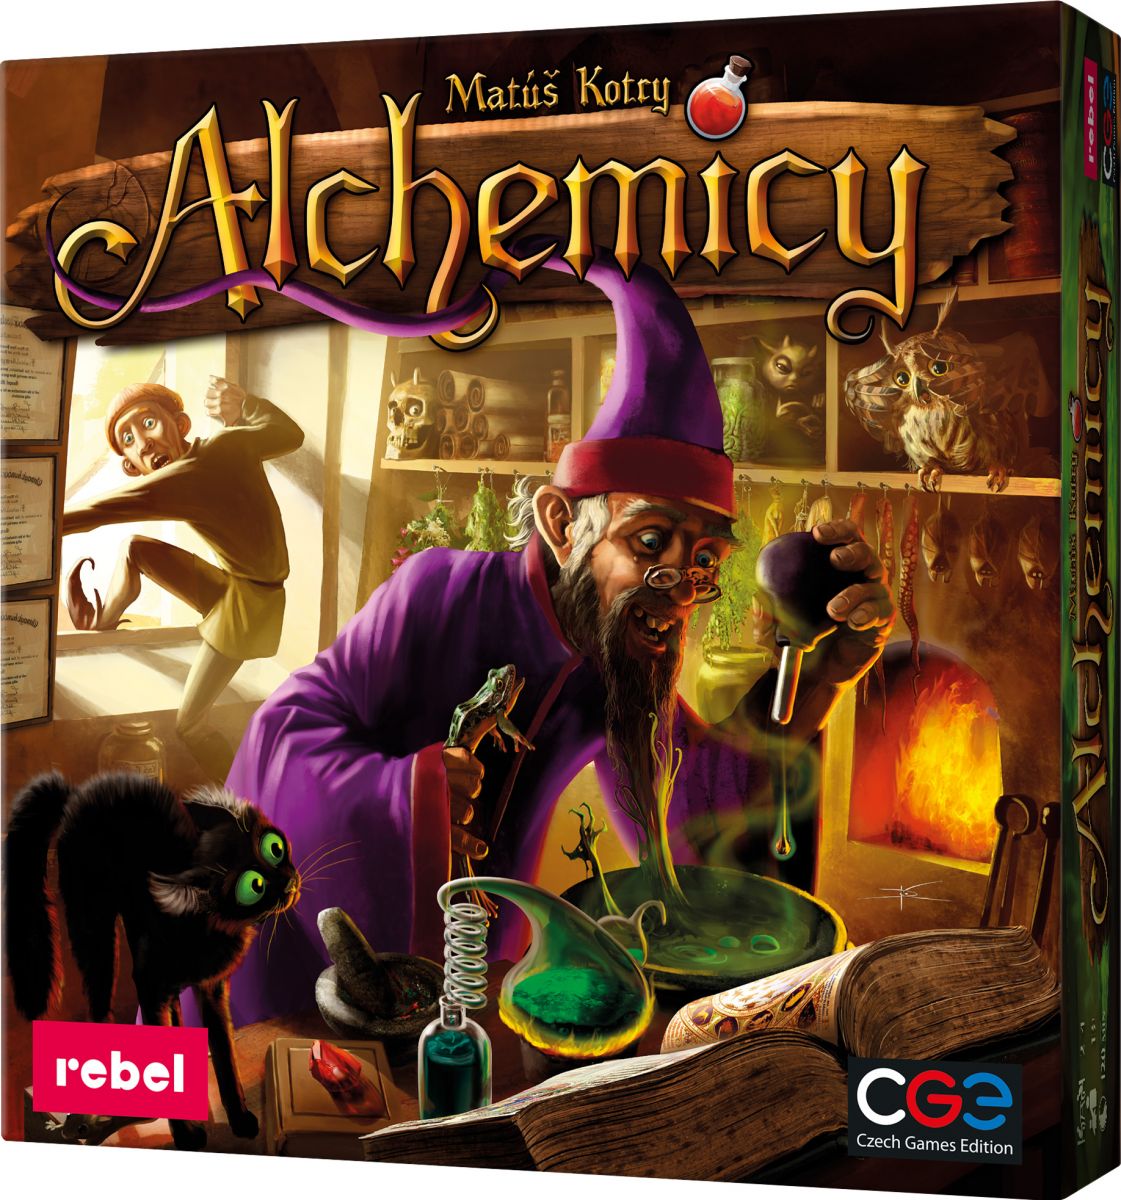 Na zdjęciu znajduje się pudełko gry Alchemicy.